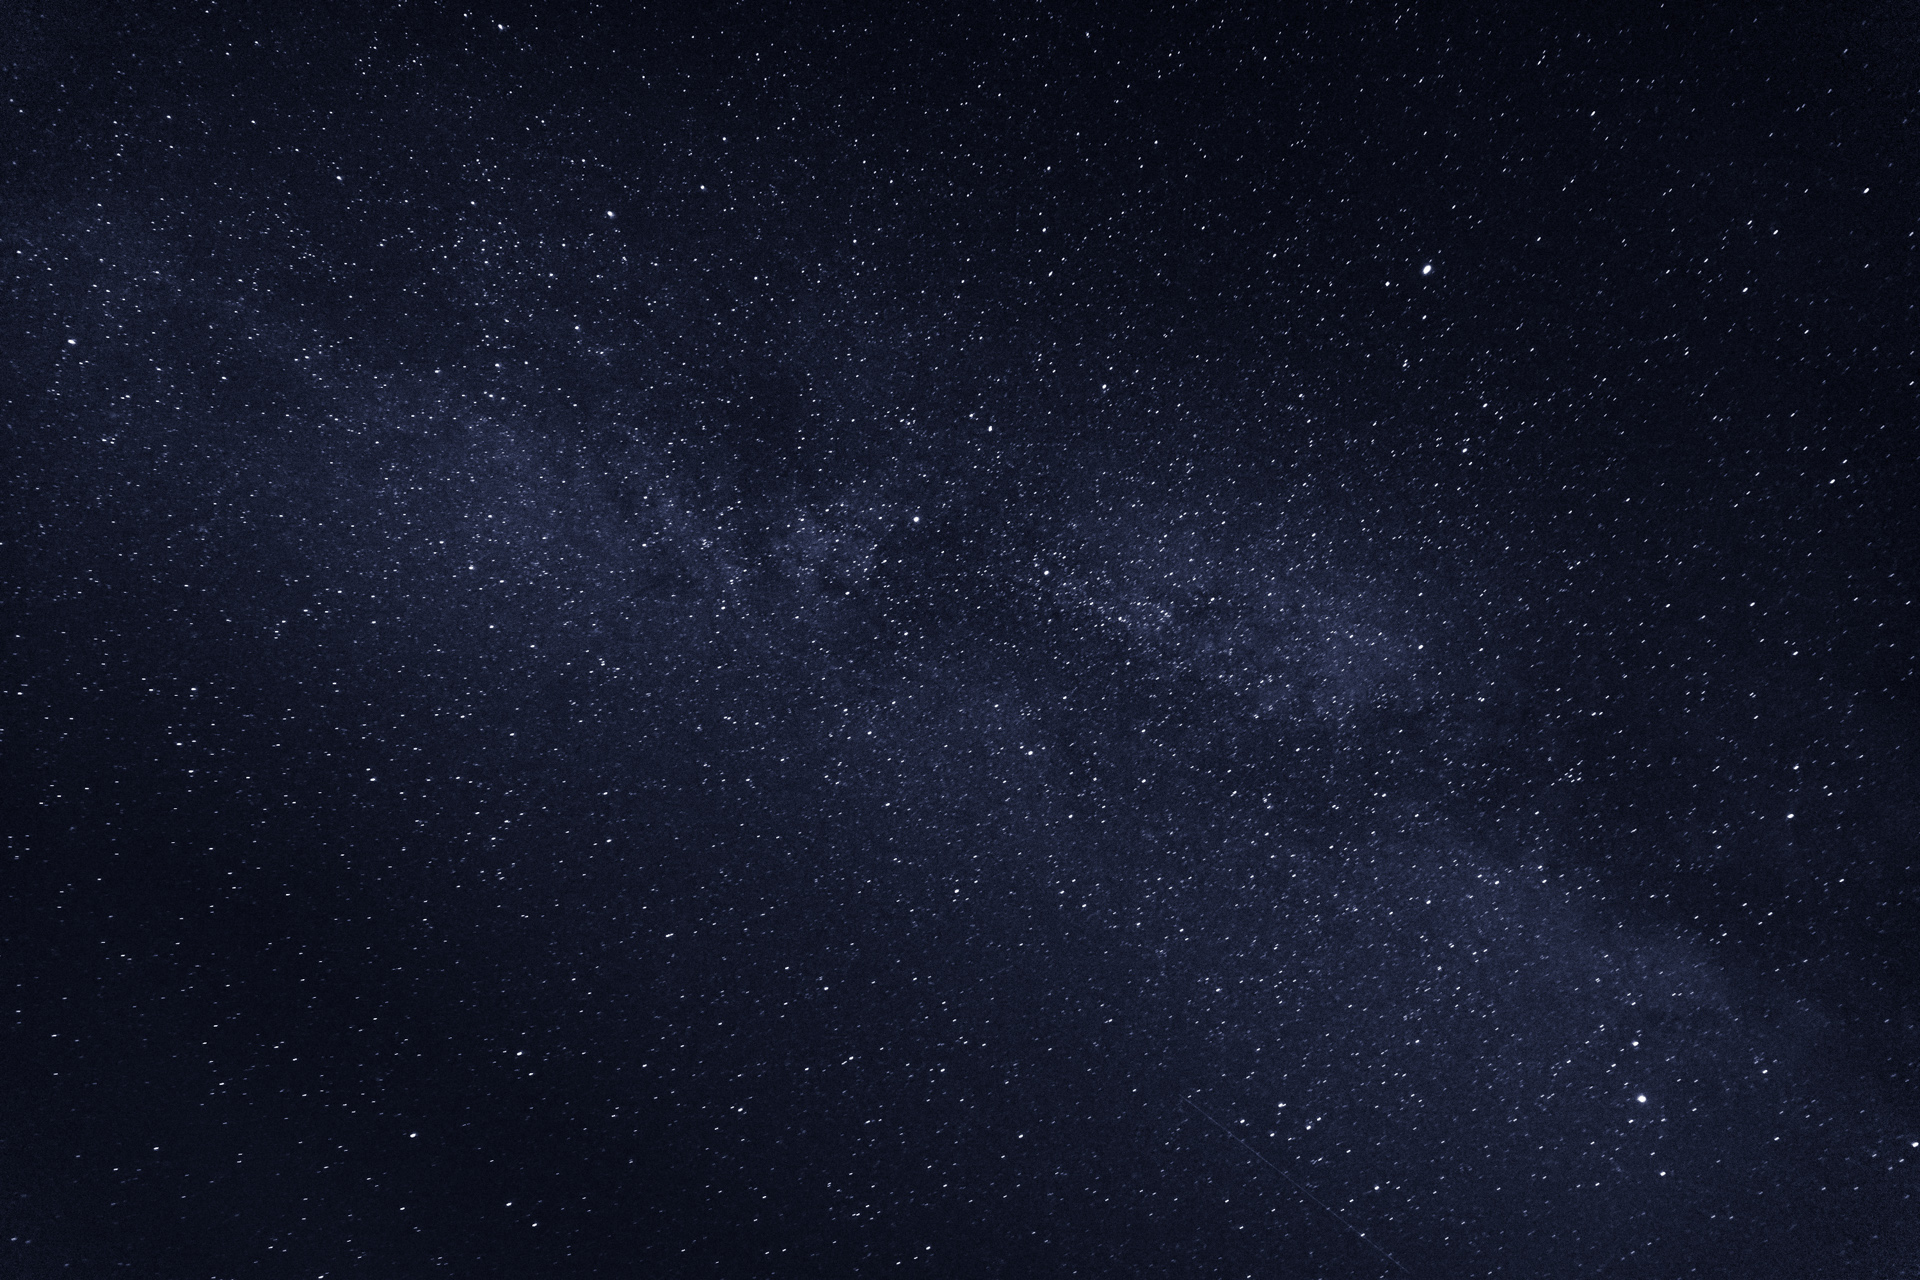 Night Sky - Milky Way - Carl Zeiss DT1680ZA